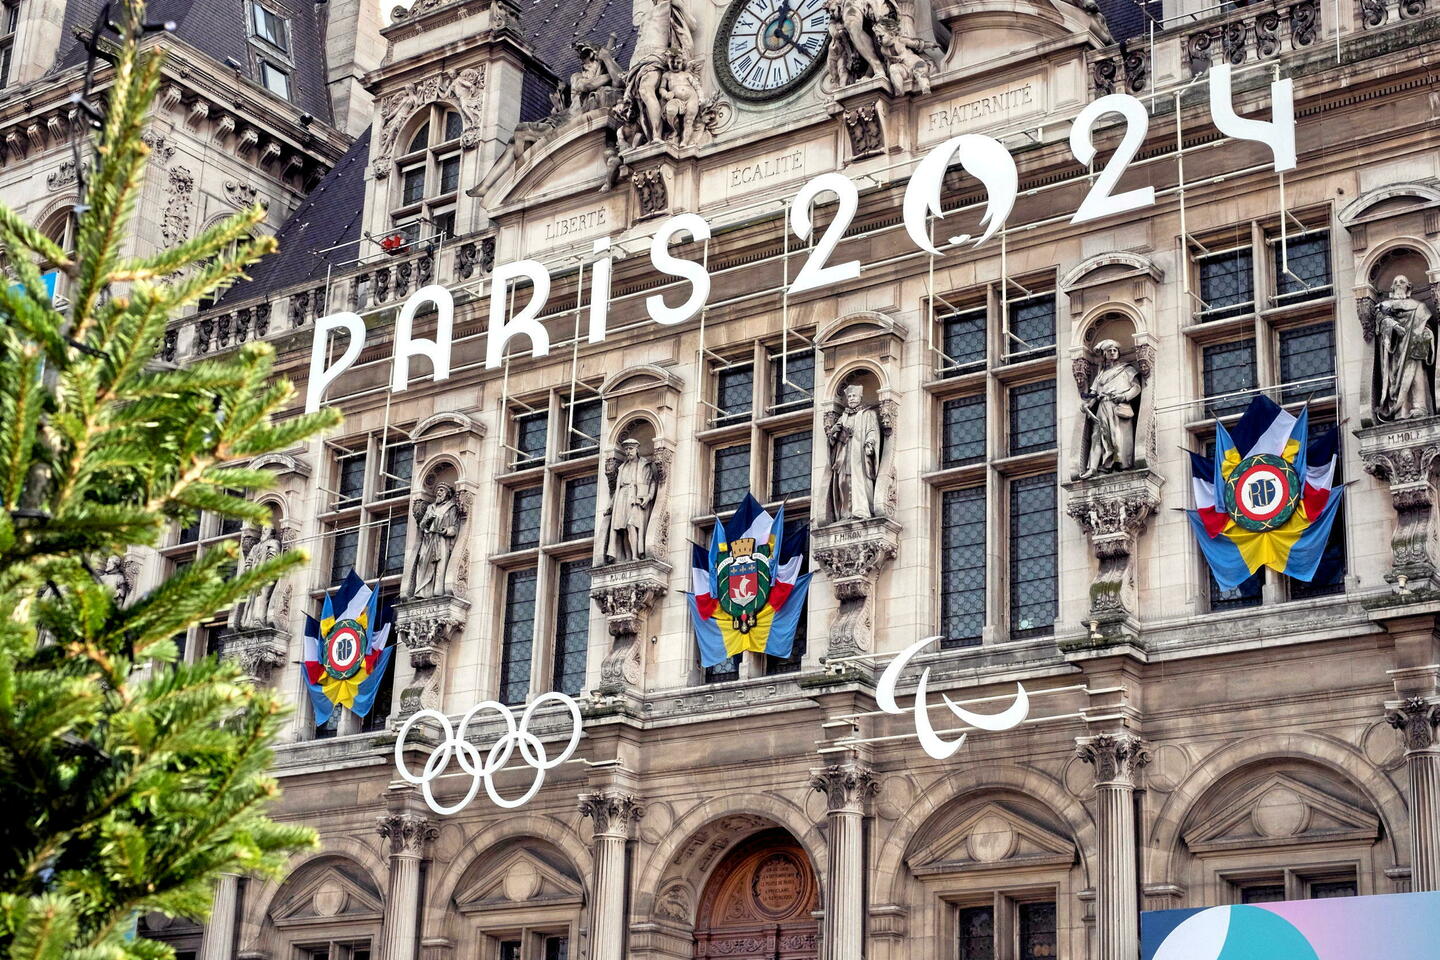 Paris 2024 : pendant les JO, il faudra un laissez-passer pour circuler